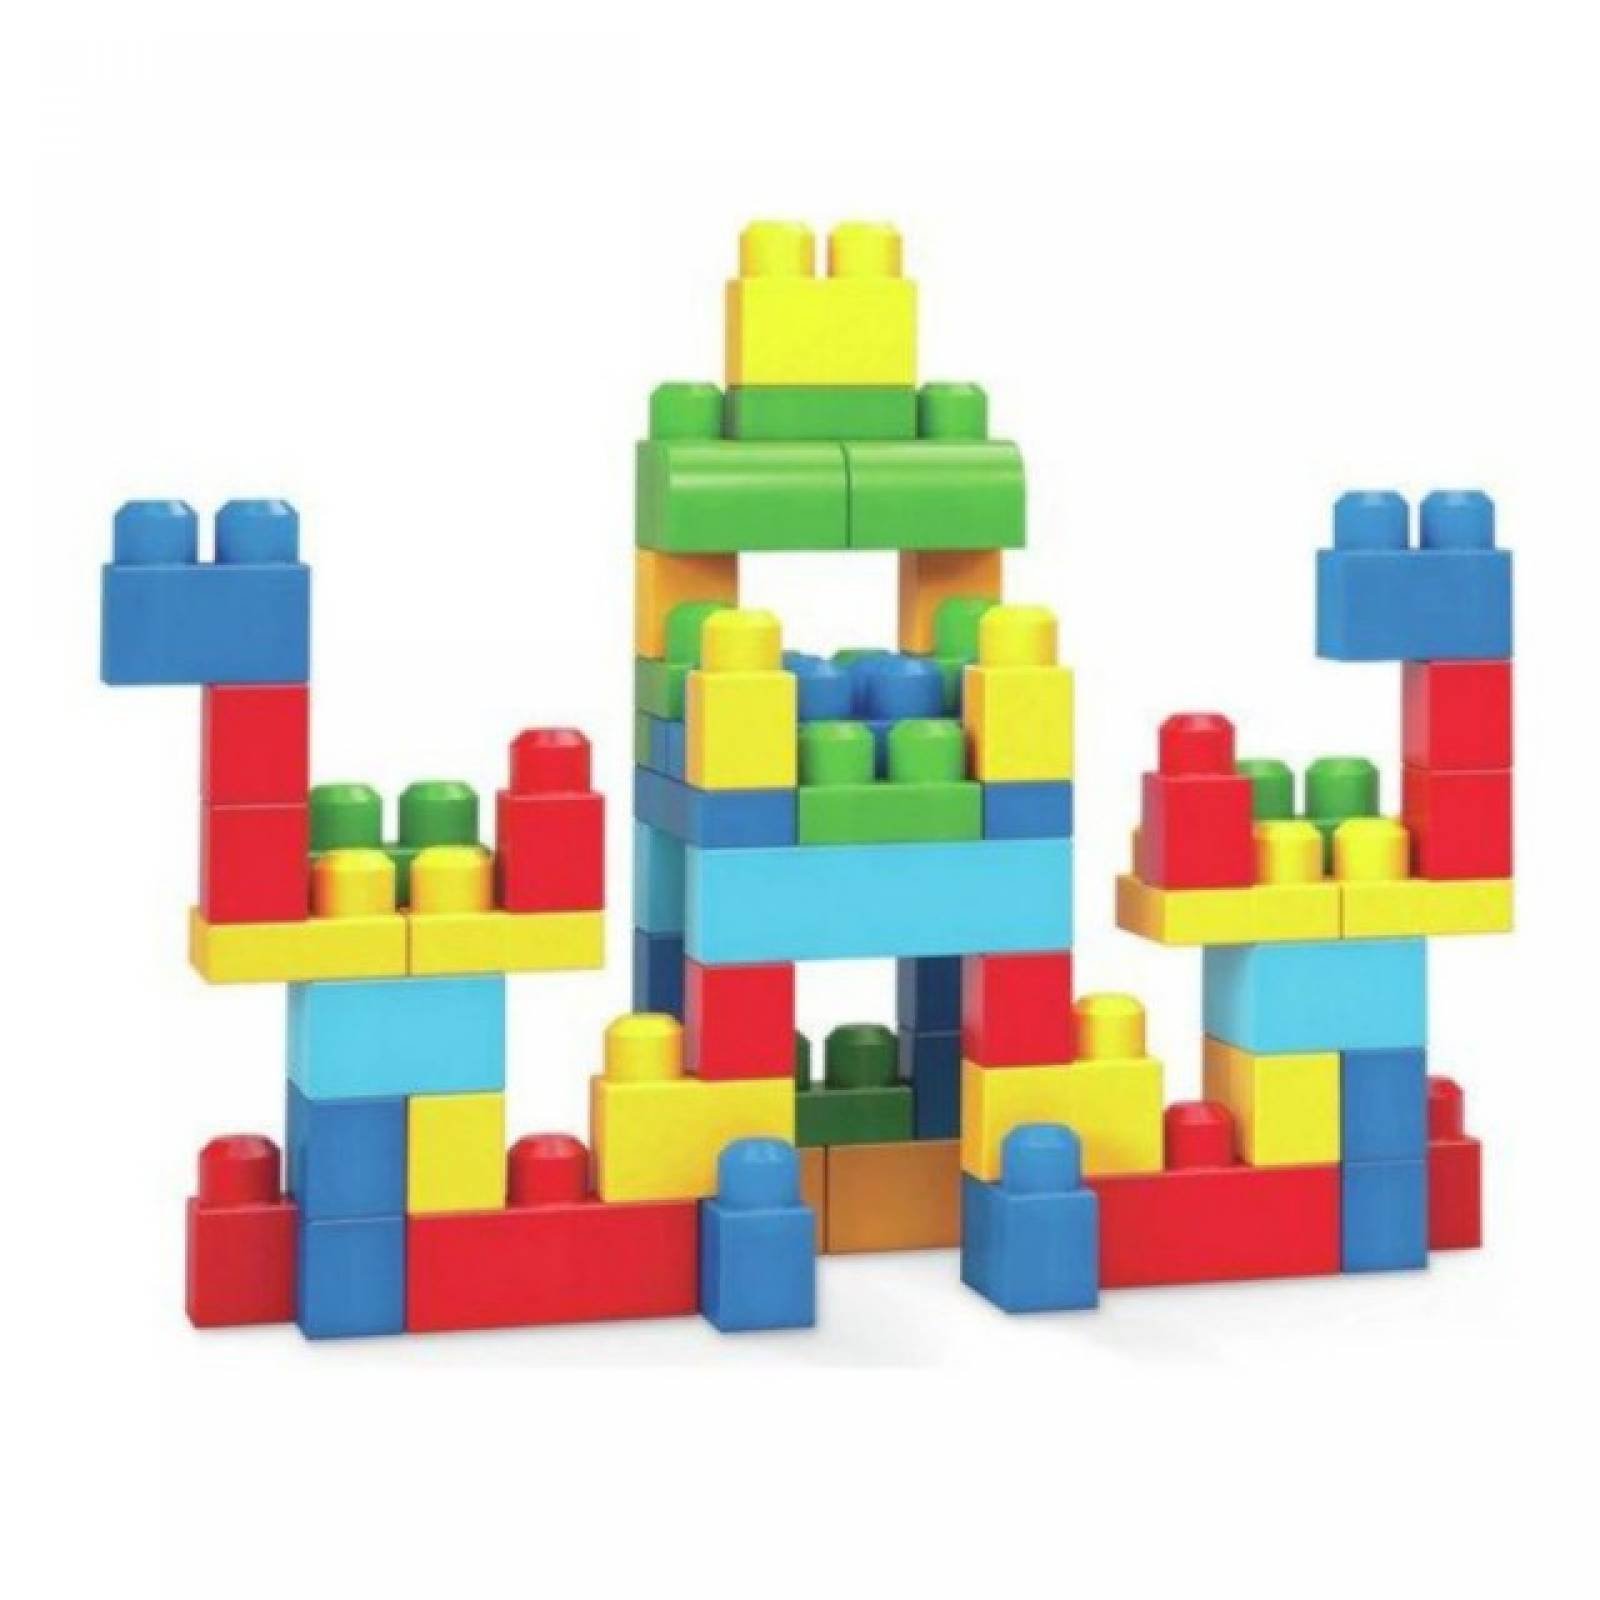 Juguete DidÃ¡ctico Funny Blocks: Rompecabezas de blocks multiforma